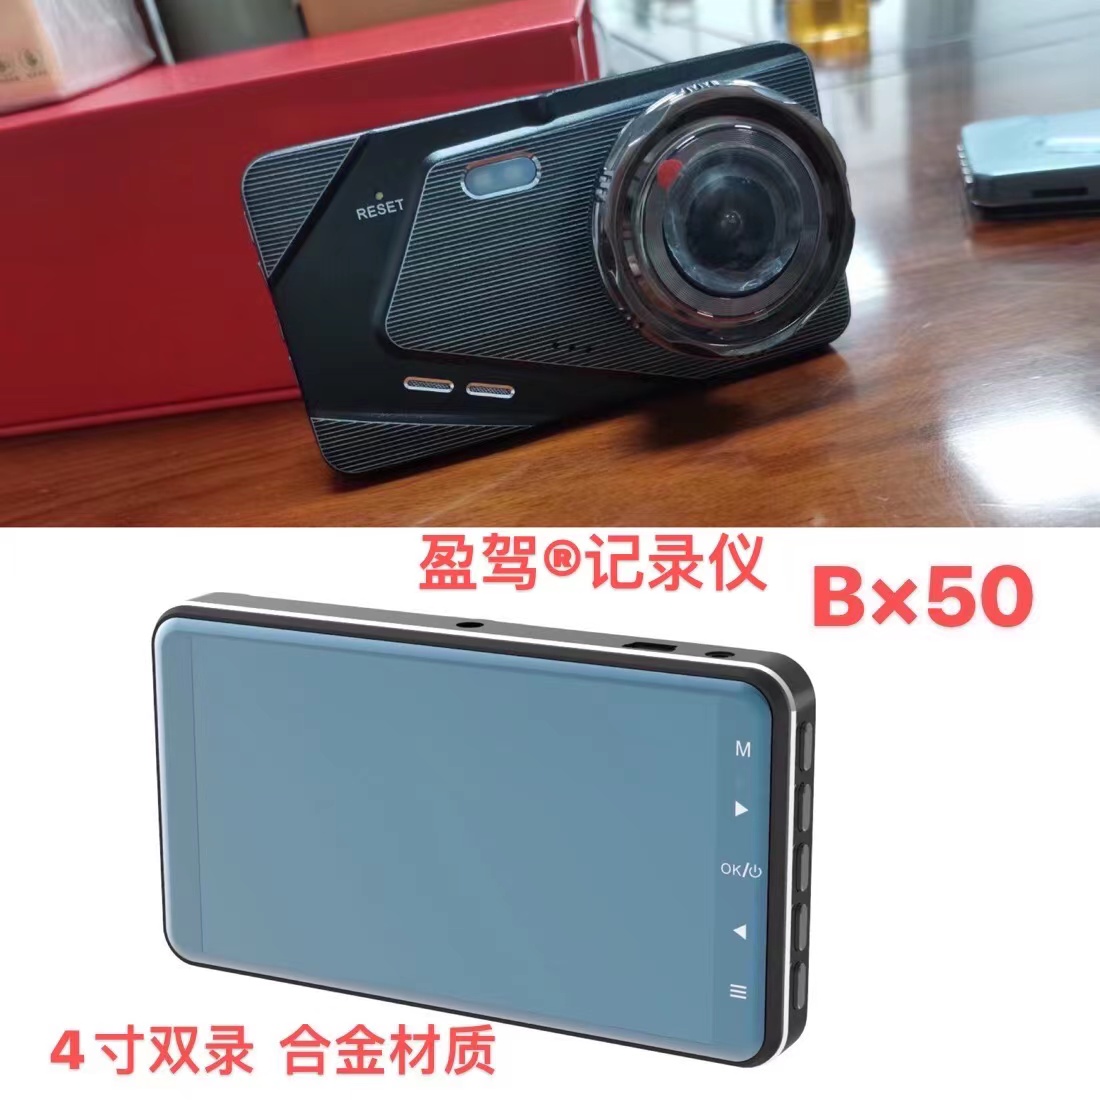 Járműkamera --YJ márka -- új termék -- BX50 bemutatásra kerül